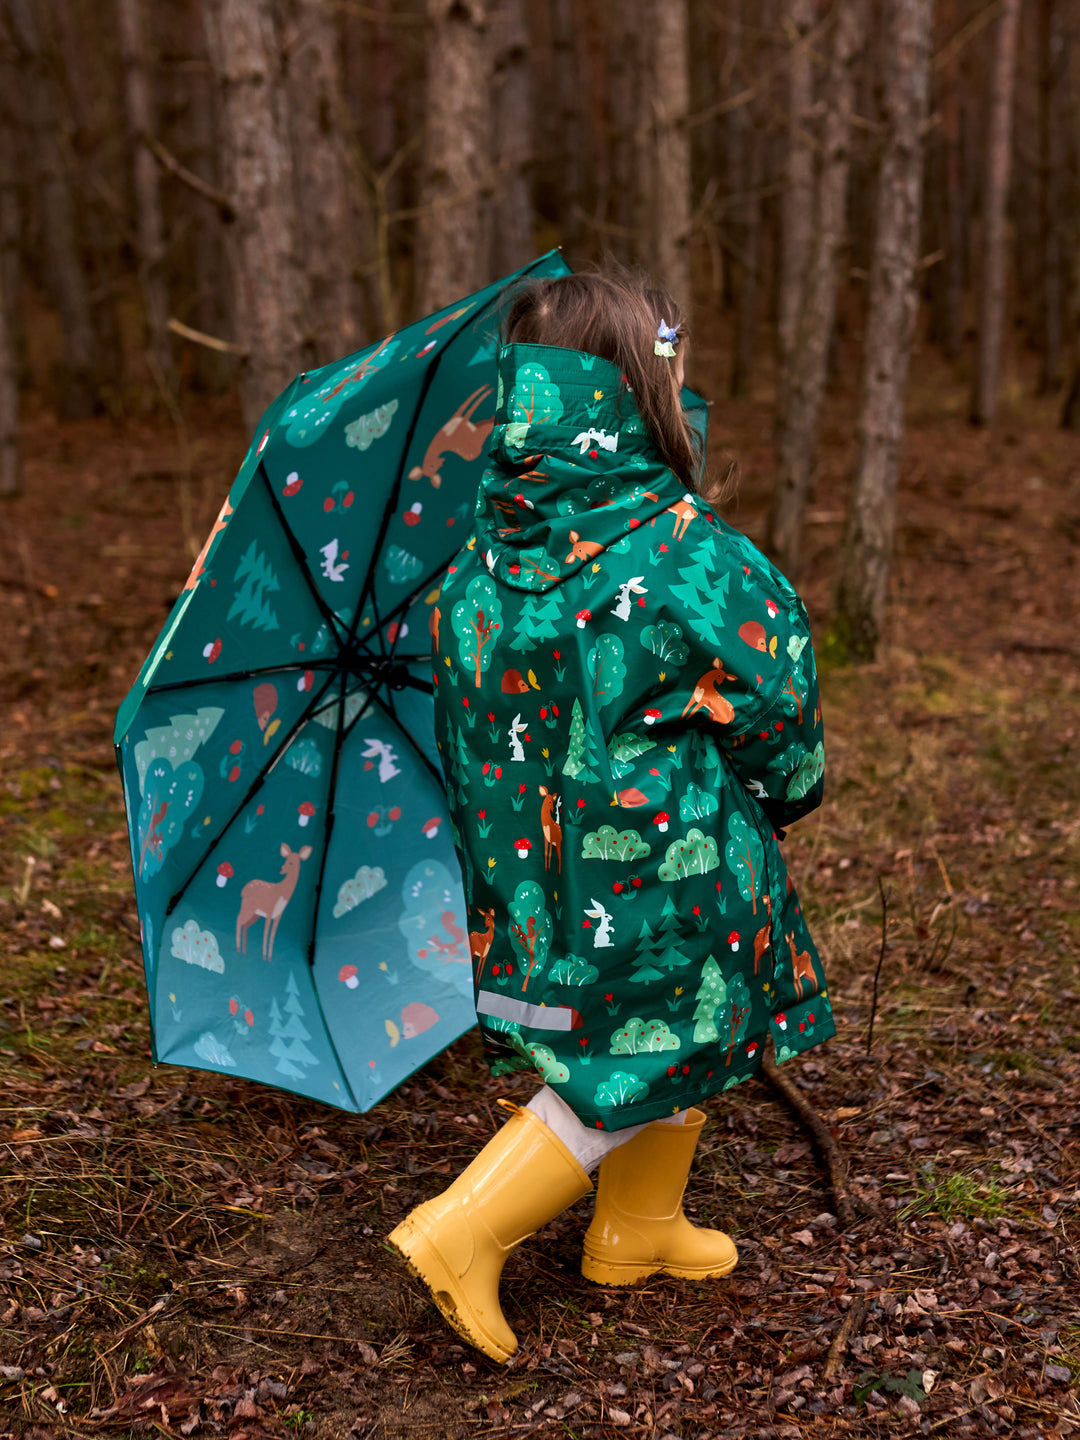 Parapluie Amis de la forêt